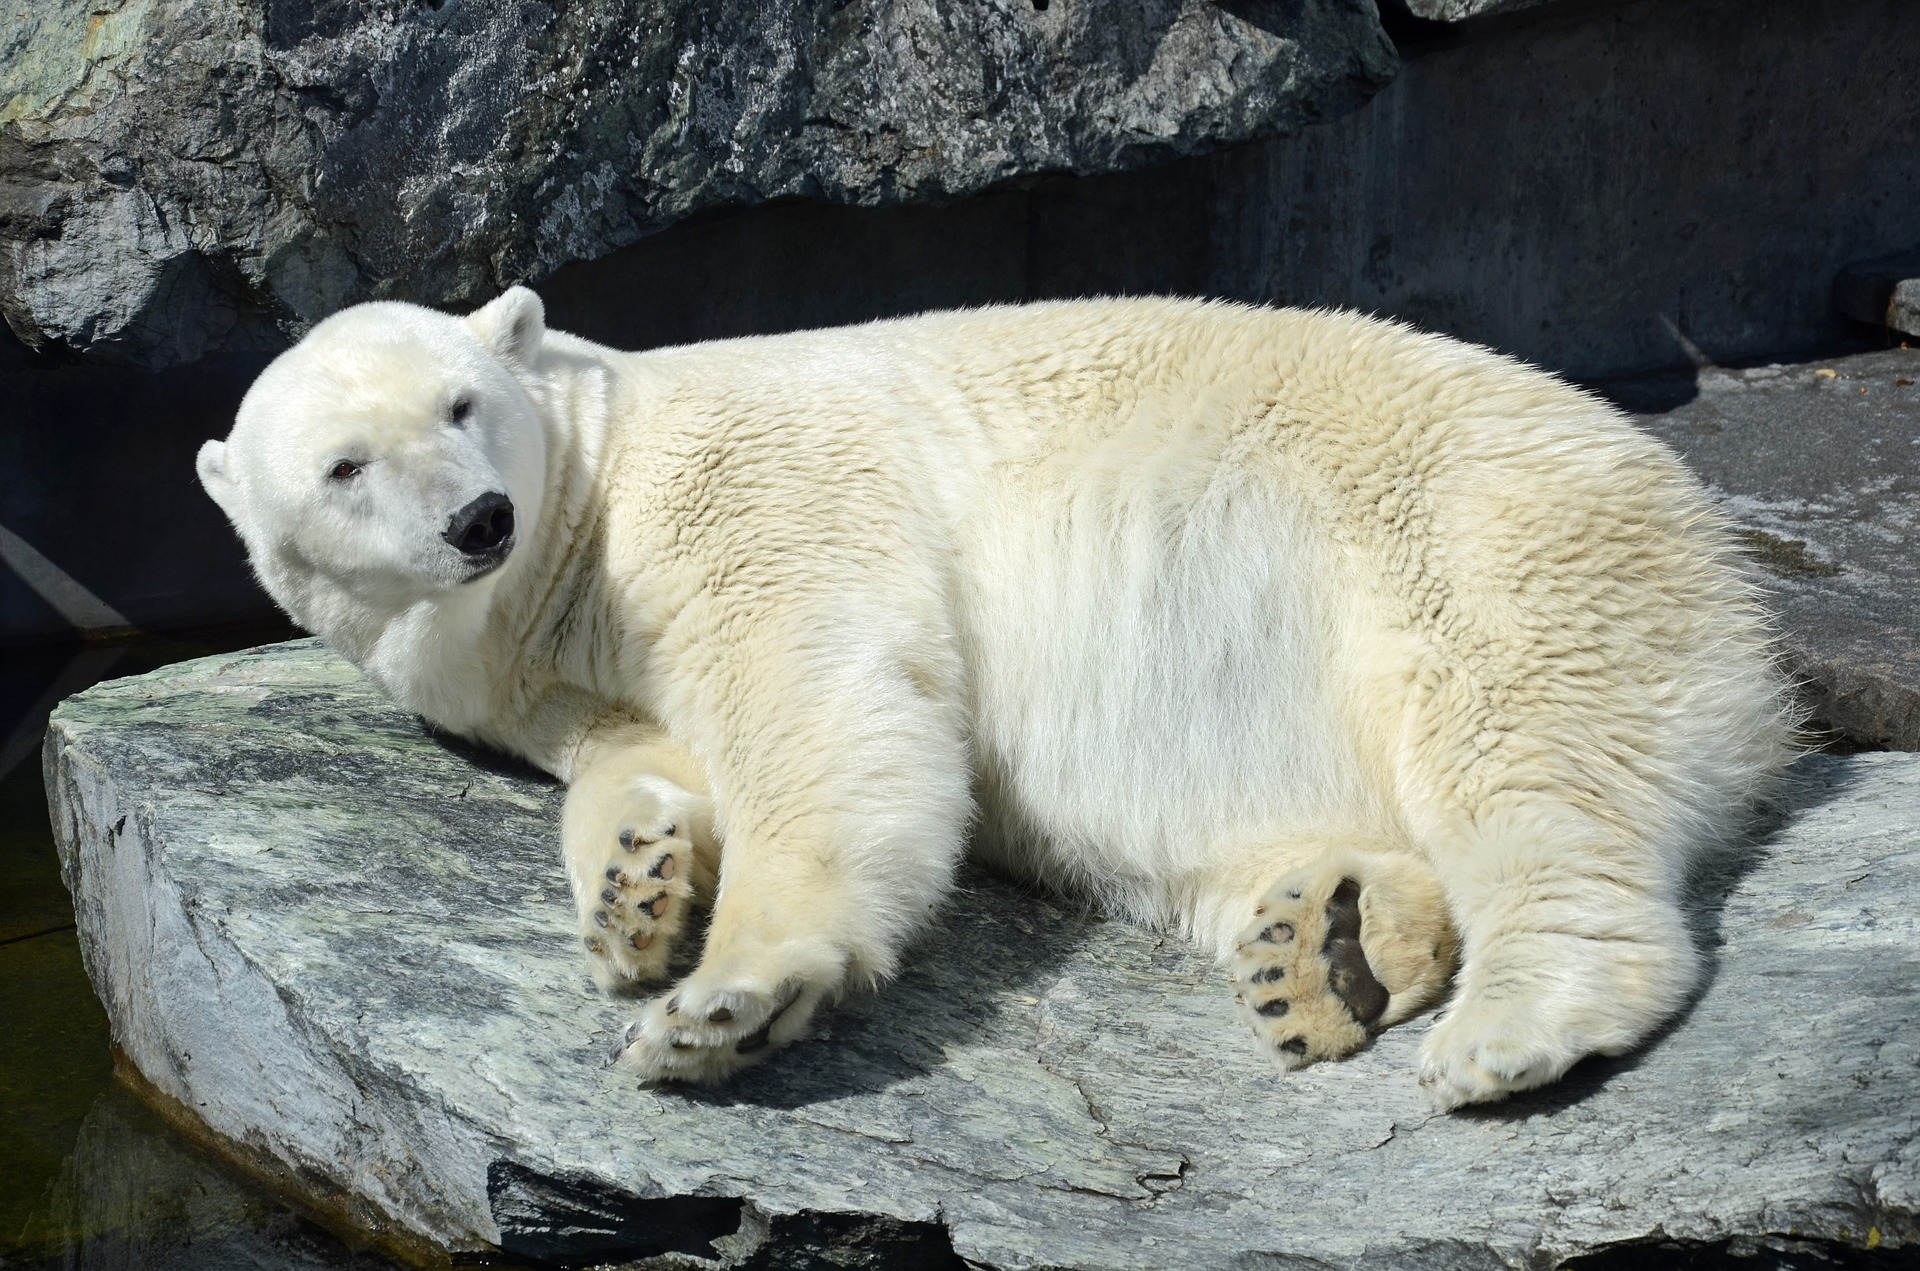 Арктика сегодня: новый рекорд, запасы Баренцева моря и белые медведи